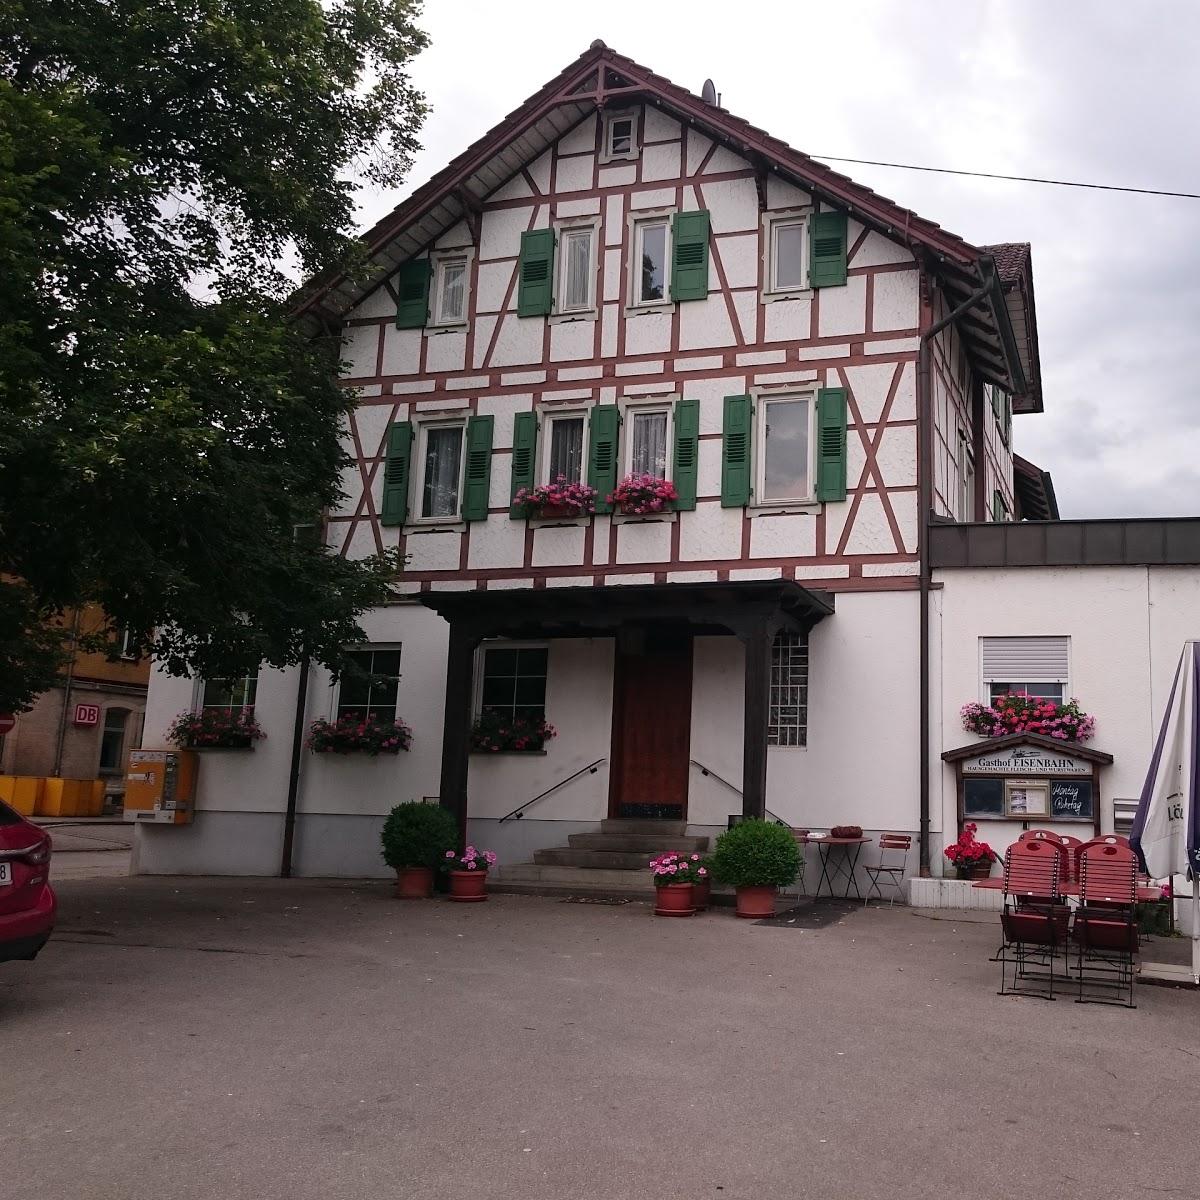 Restaurant "Gasthaus zur Eisenbahn" in Sulzbach an der Murr